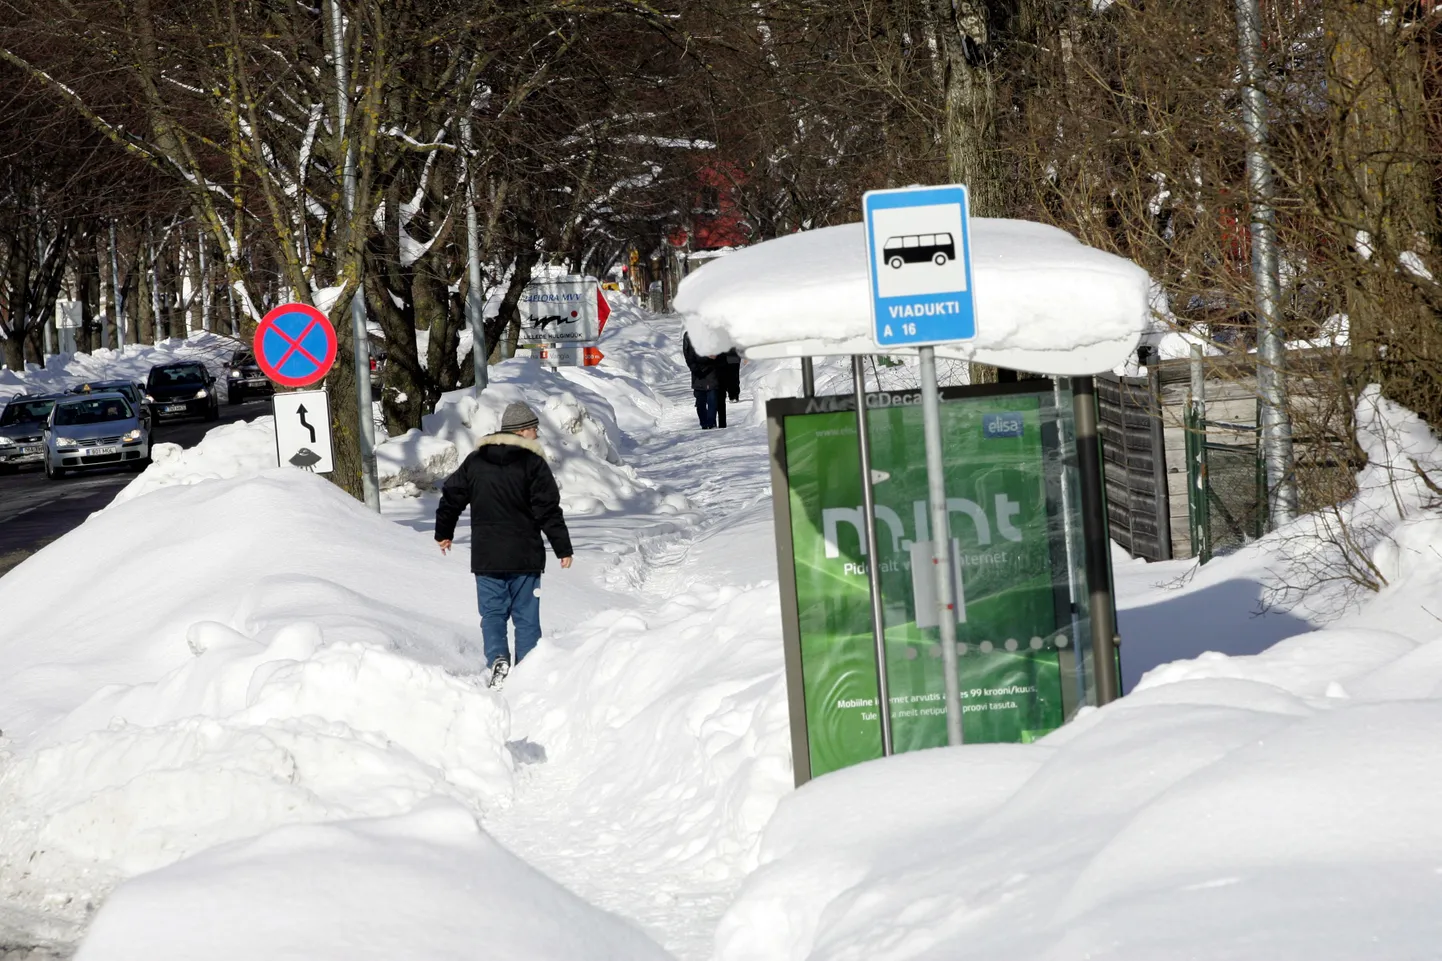 Veerenni tänaval olevasse Viadukti bussipeatusse peavad jalakäijad minema mööda hangede vahele tallatud kitsast rada, sest naaberkinnistute esistelt kõnniteedelt pole sel talvel lund roogitud.